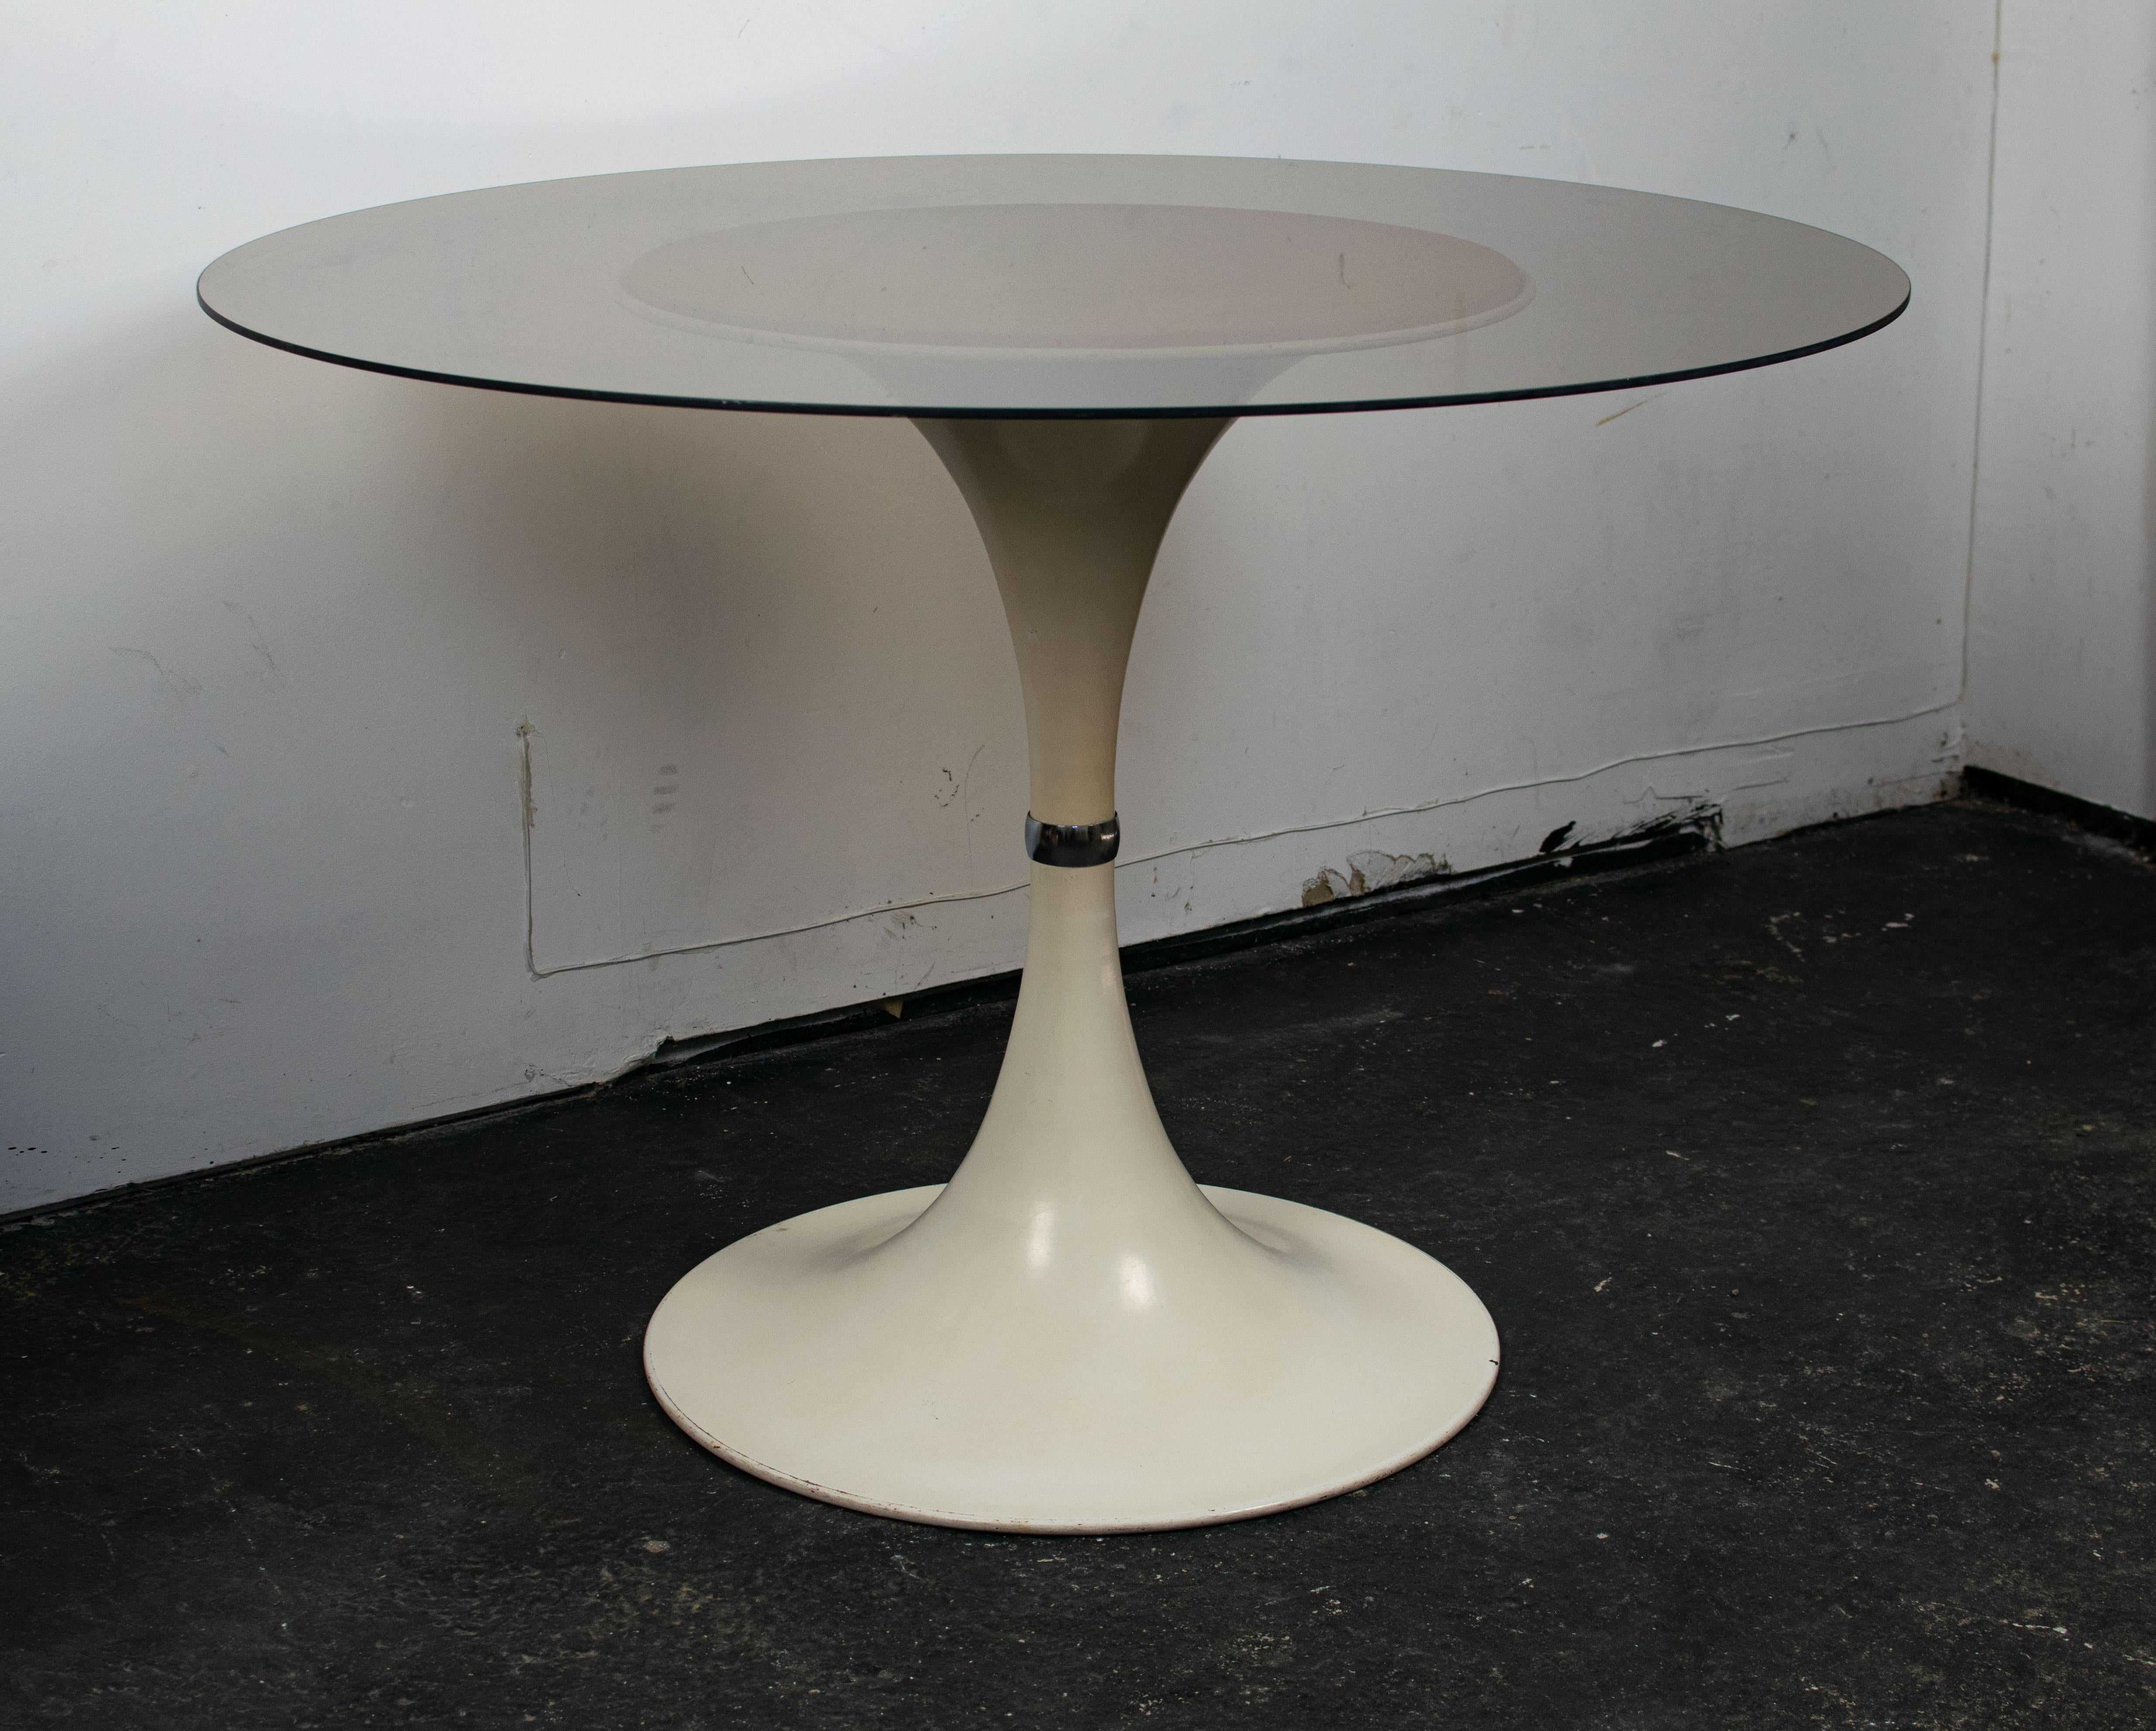 Table tulipe attribuée au designer italien Gastone Rinaldi, éditée dans les années 70. 
Cette table tulipe est réalisée en aluminium. Son pied caractéristique se reconnaît à cette anneau situé au milieu du pied. Ici, le pied a probablement été